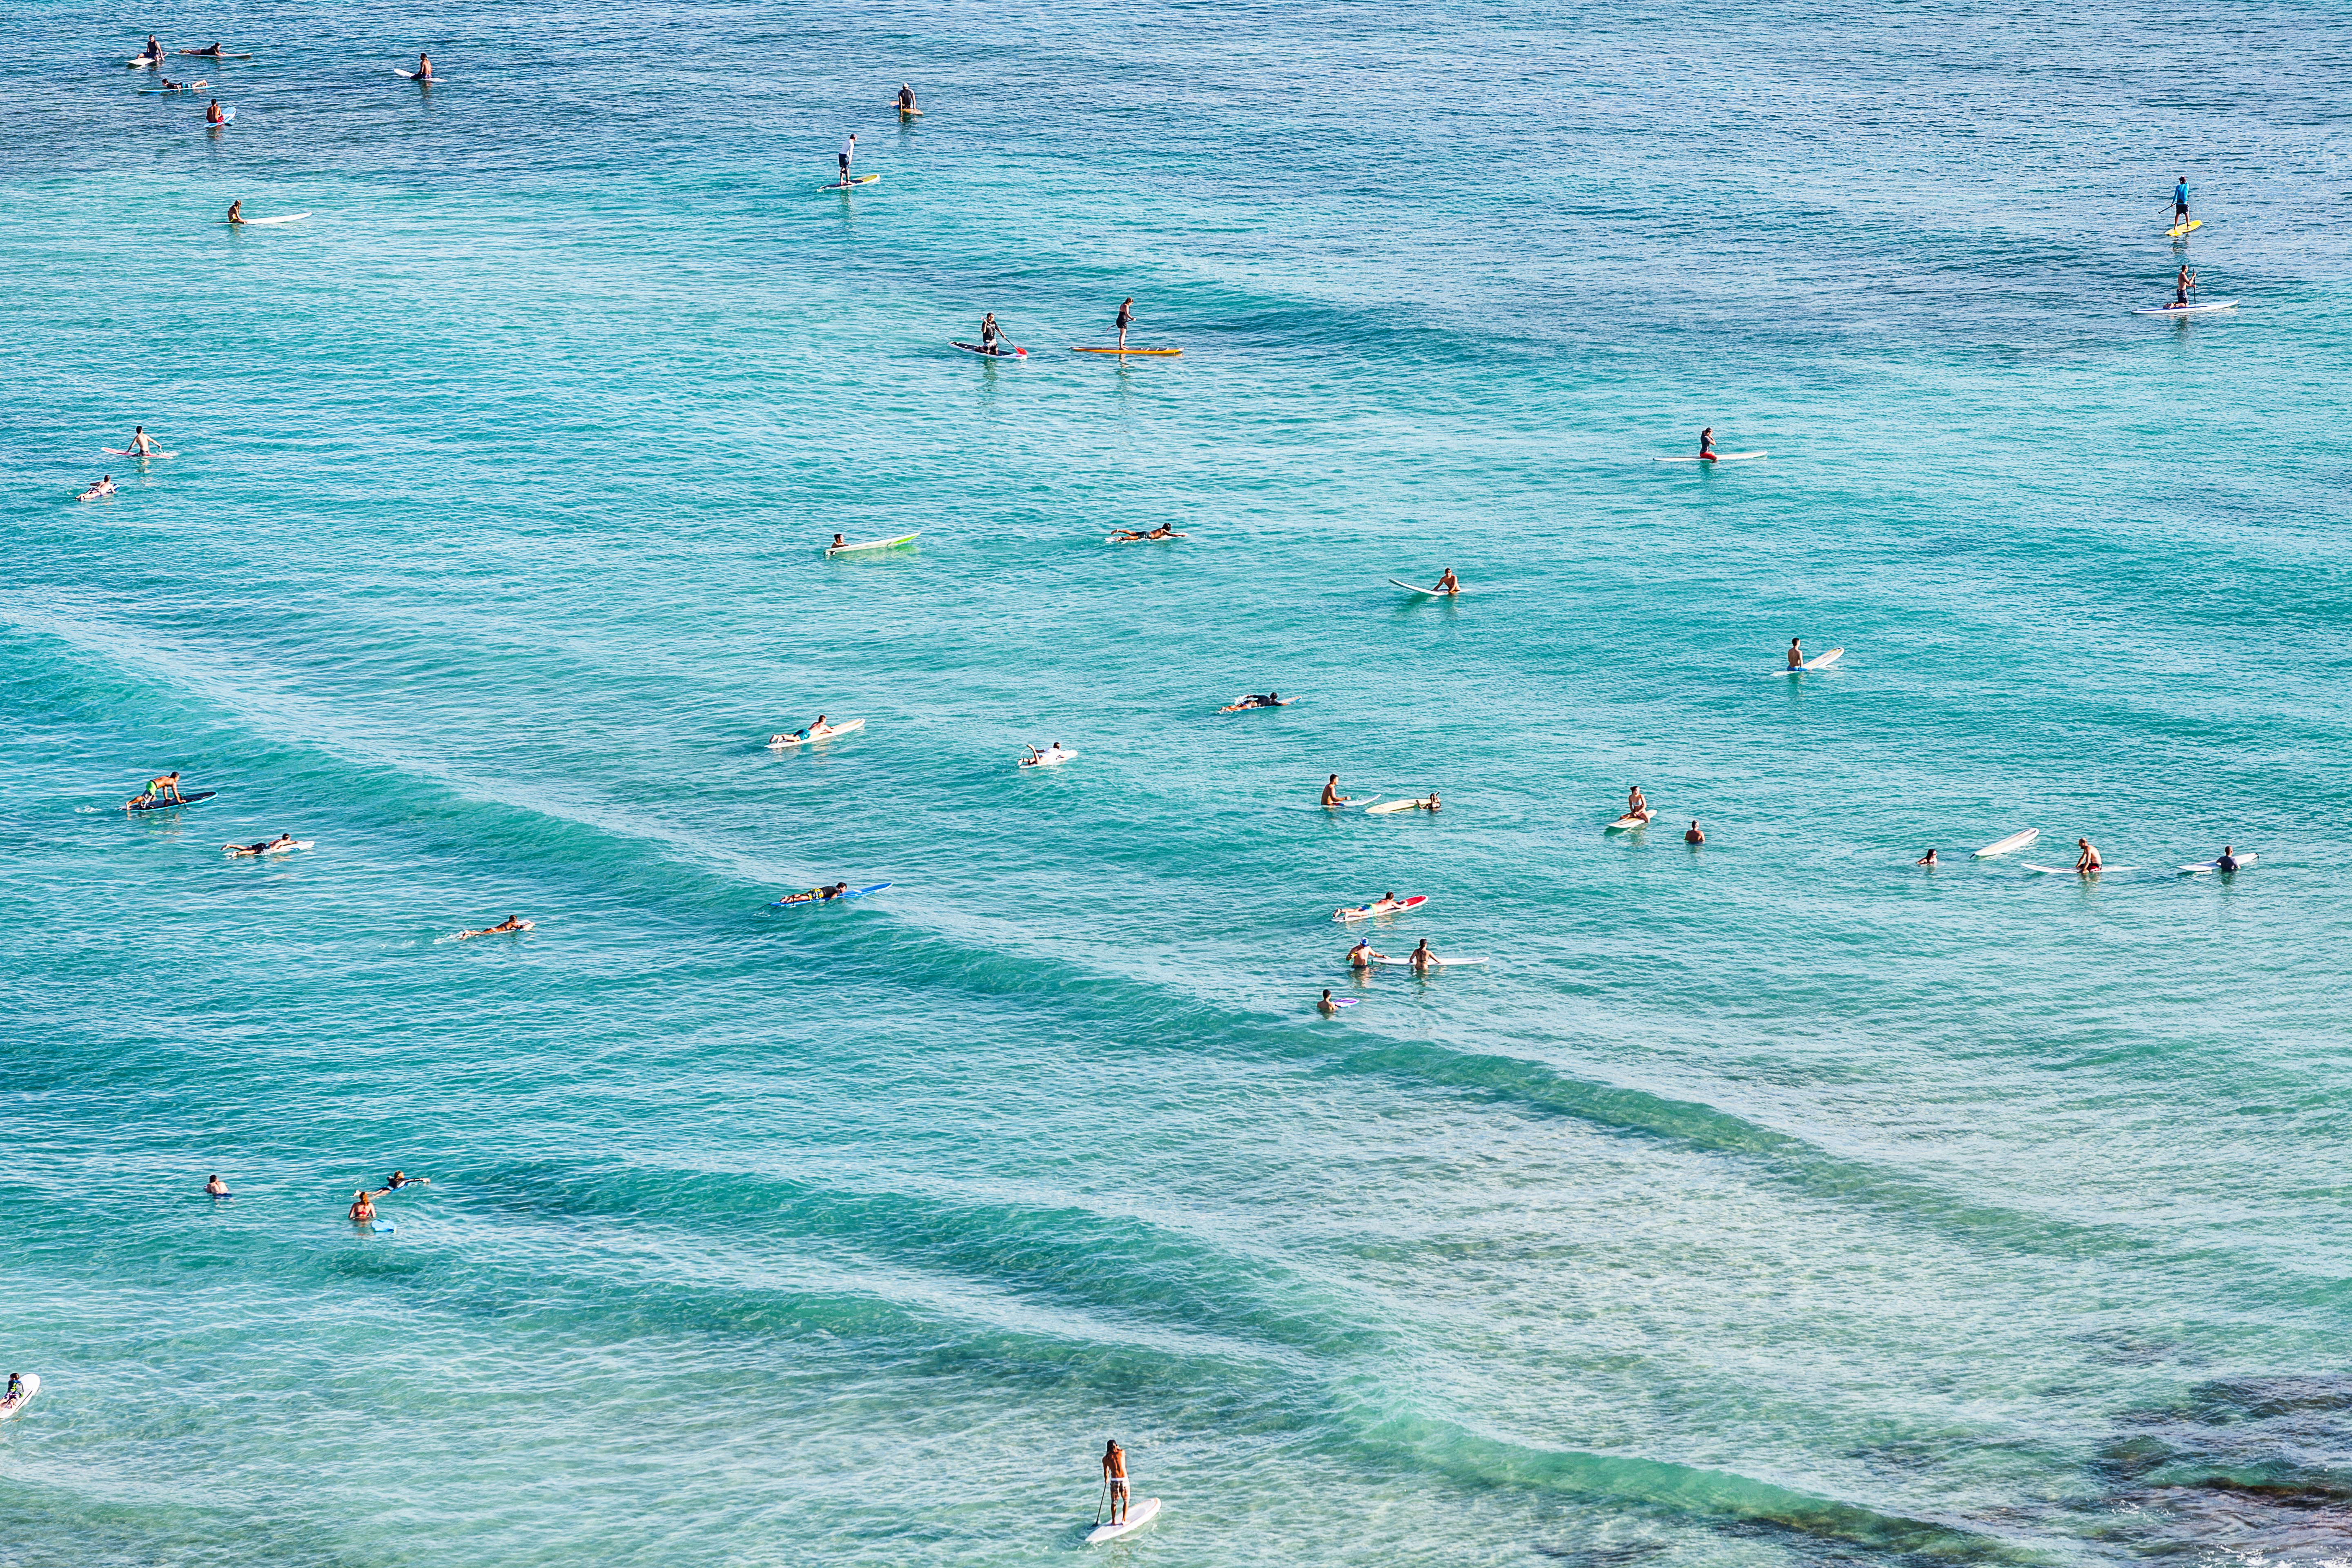 Surfers in Waikiki